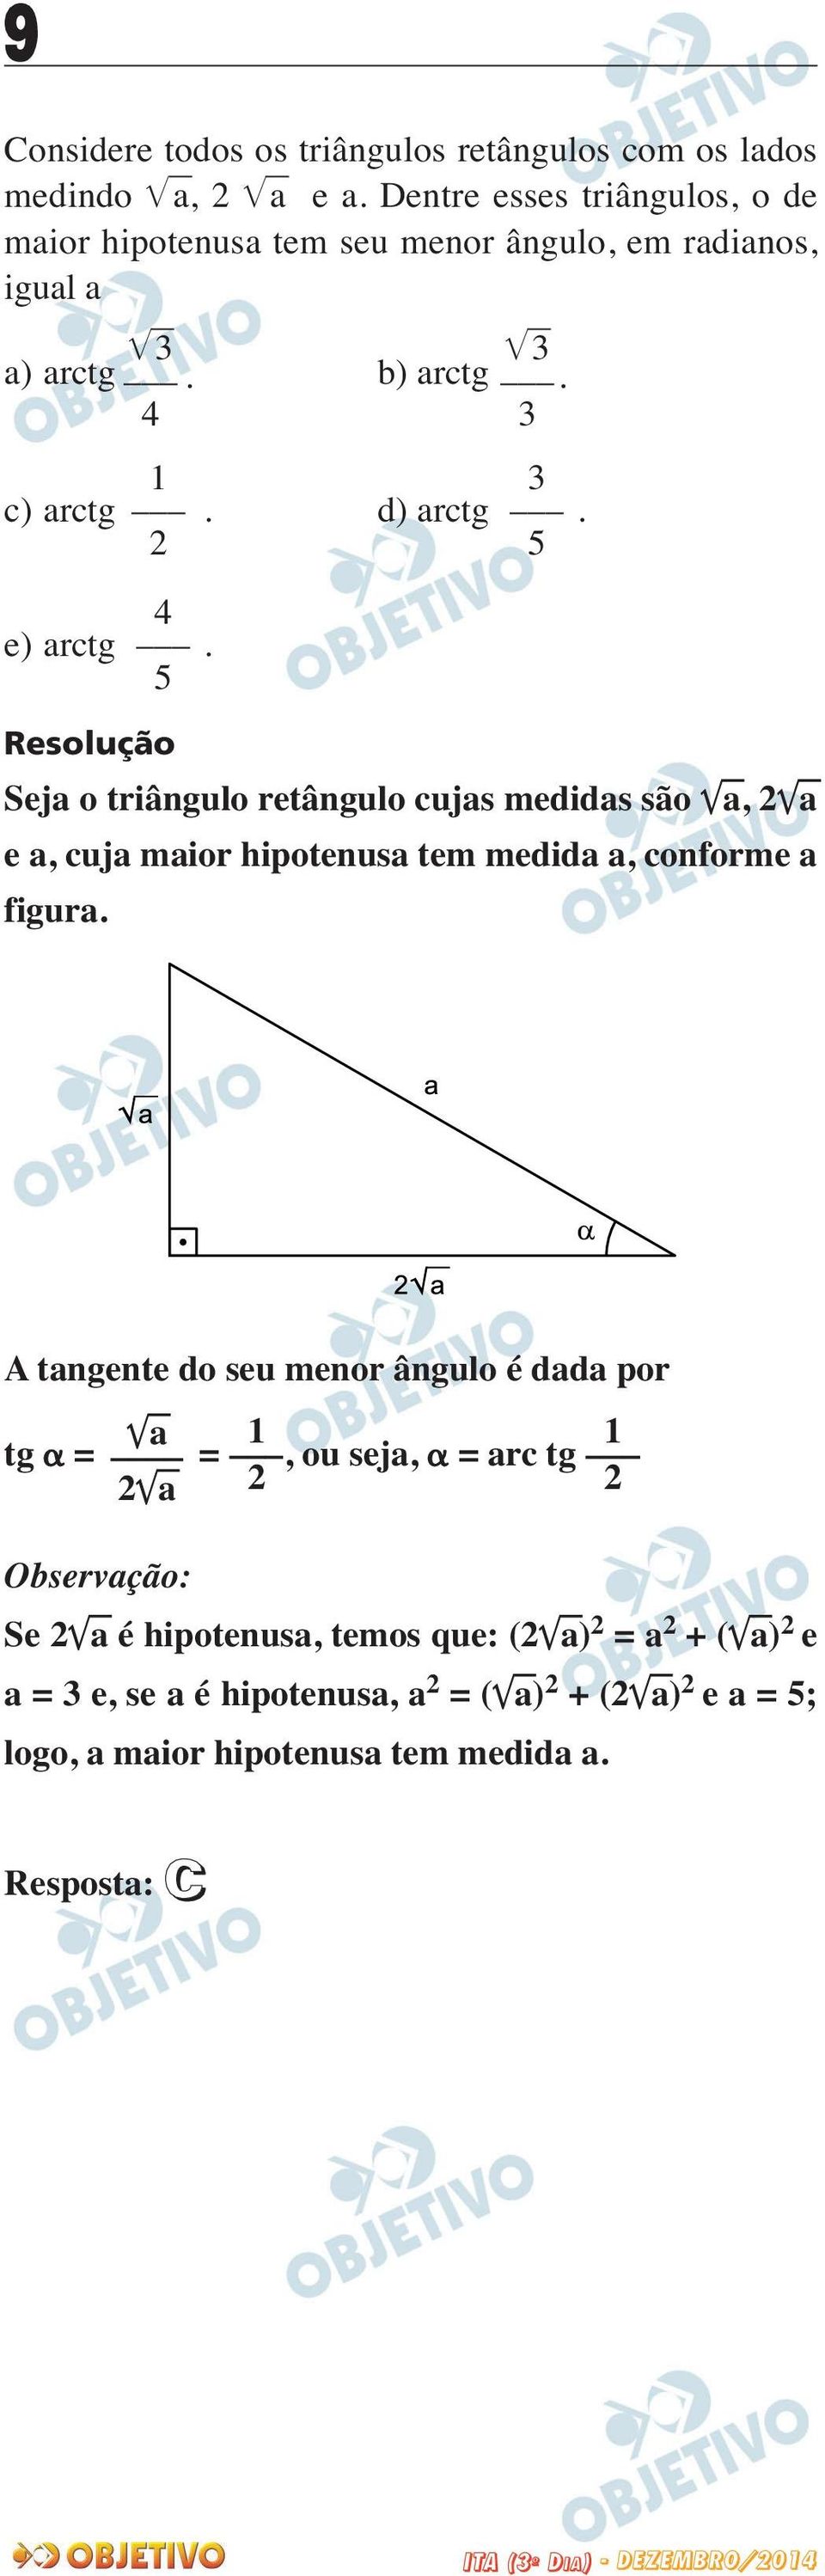 Seja o triângulo retângulo cujas medidas são a, a e a, cuja maior hipotenusa tem medida a, conforme a figura.